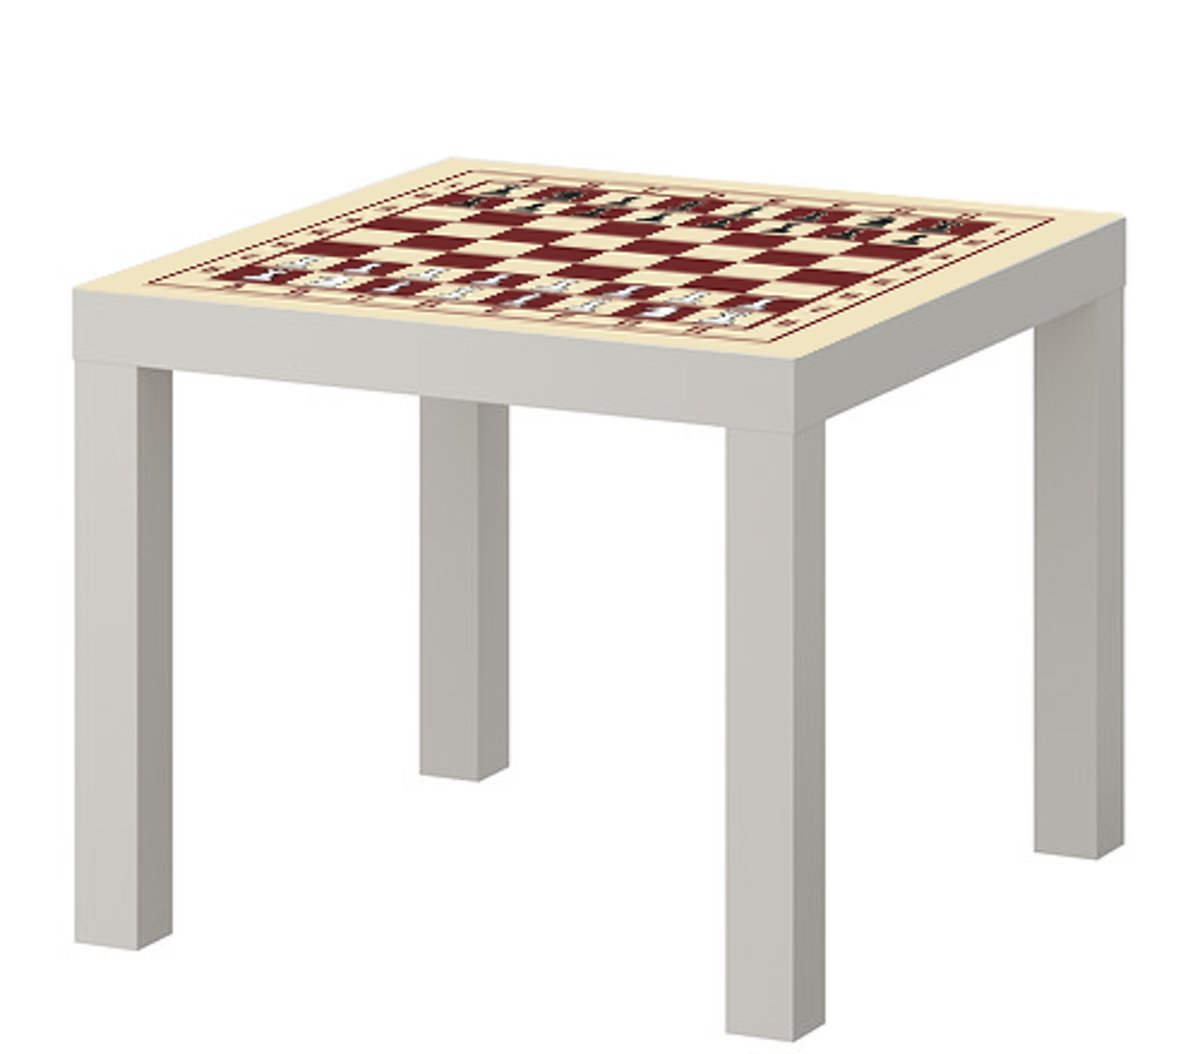 IKEA® Lack™ tafeltje met schaakbord print incl. stukken